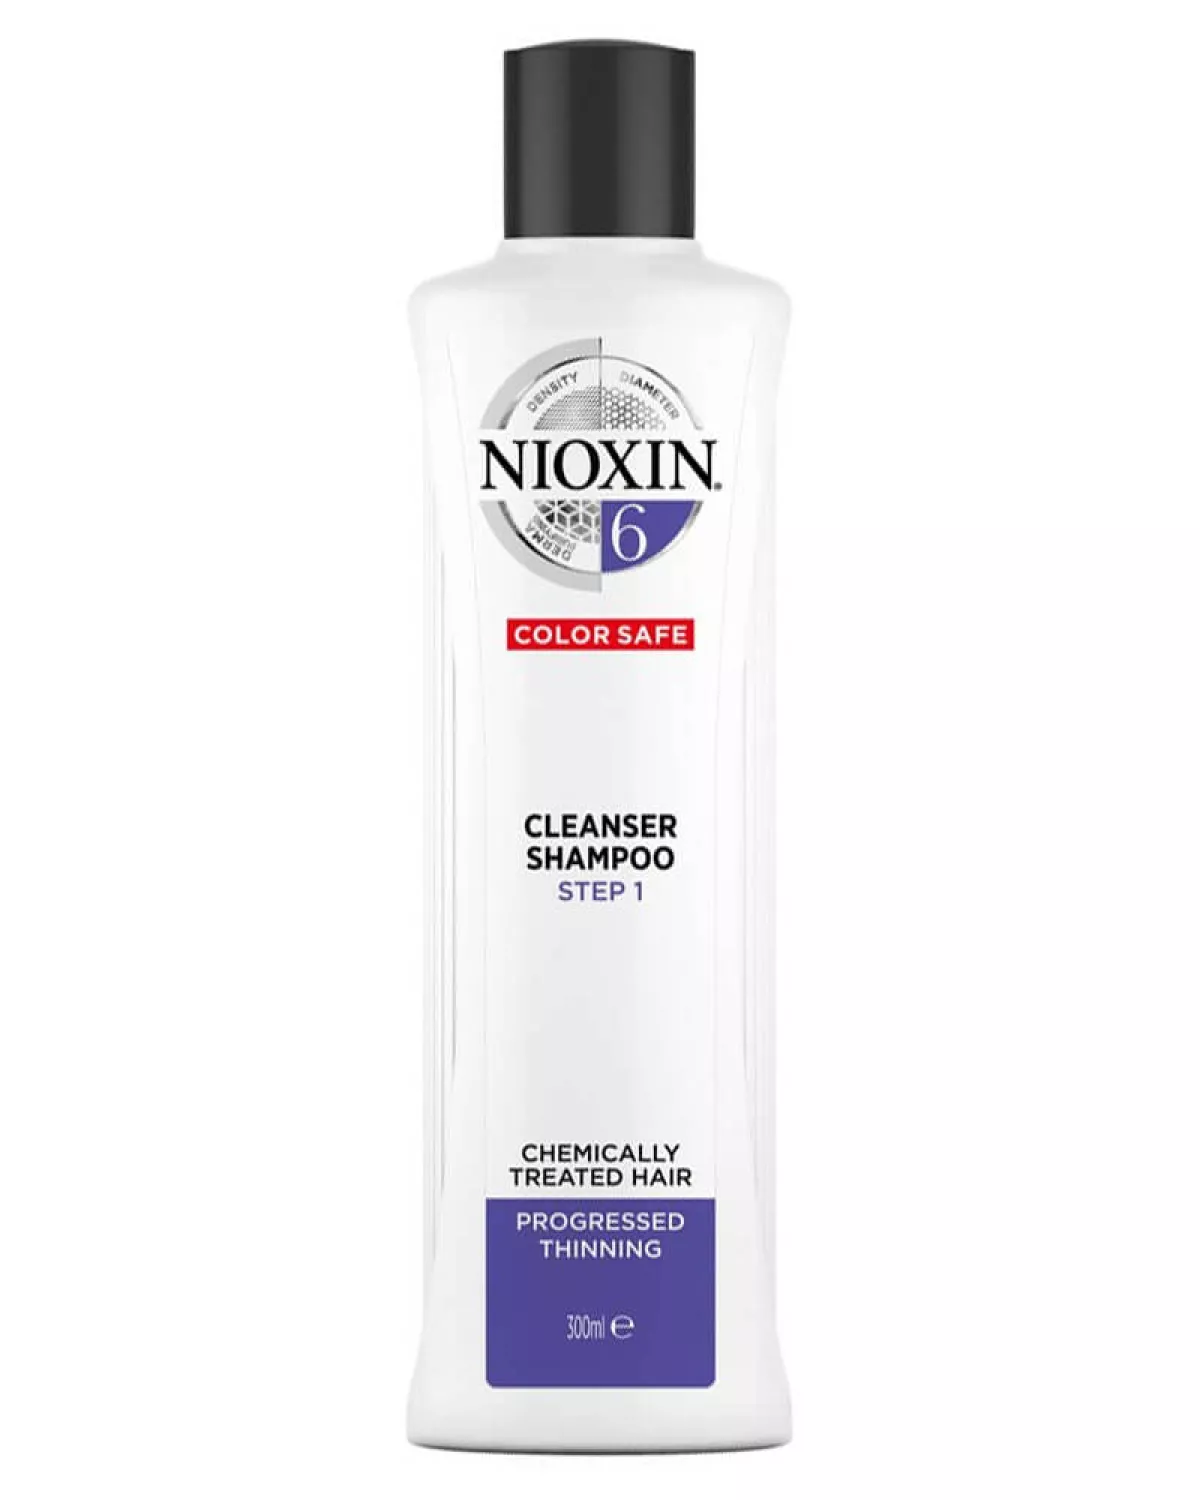 #1 - Nioxin 6 Cleanser Shampoo 300 ml